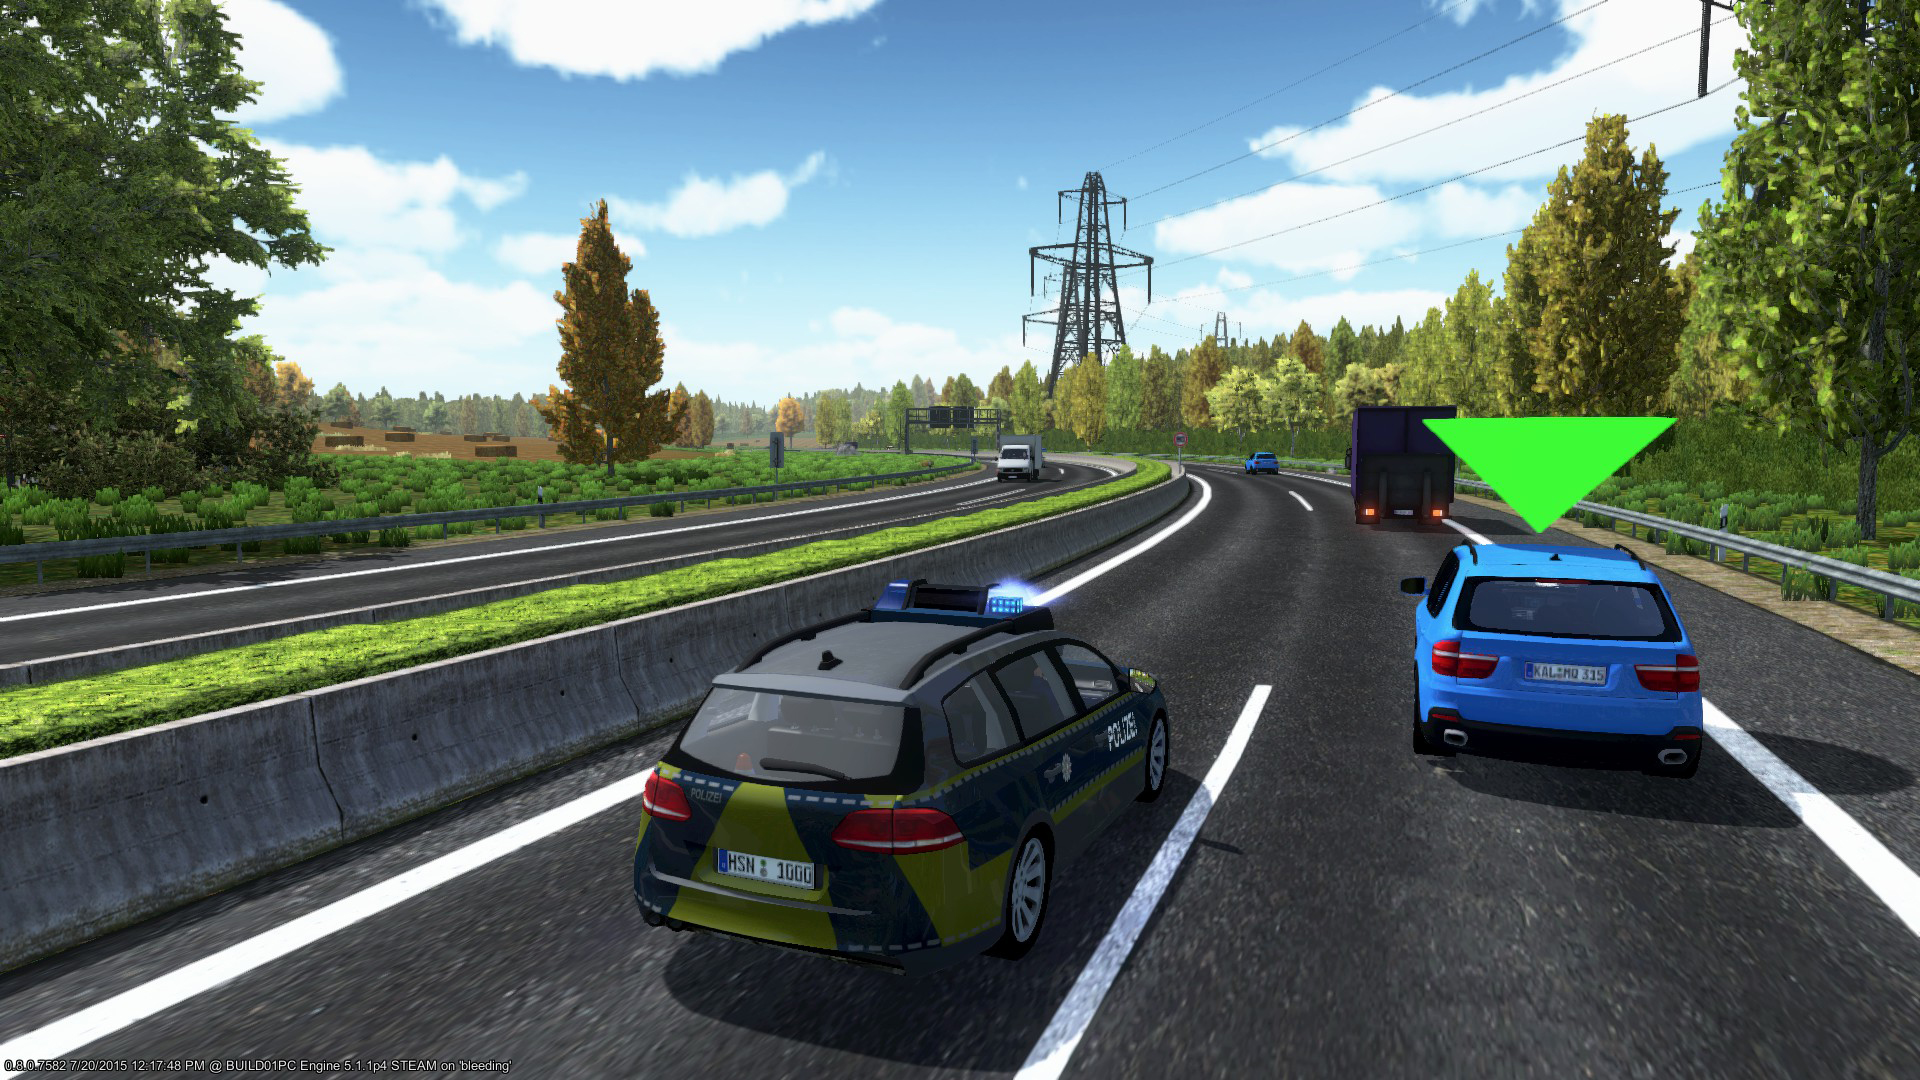 Autobahn Police Simulator on Steam